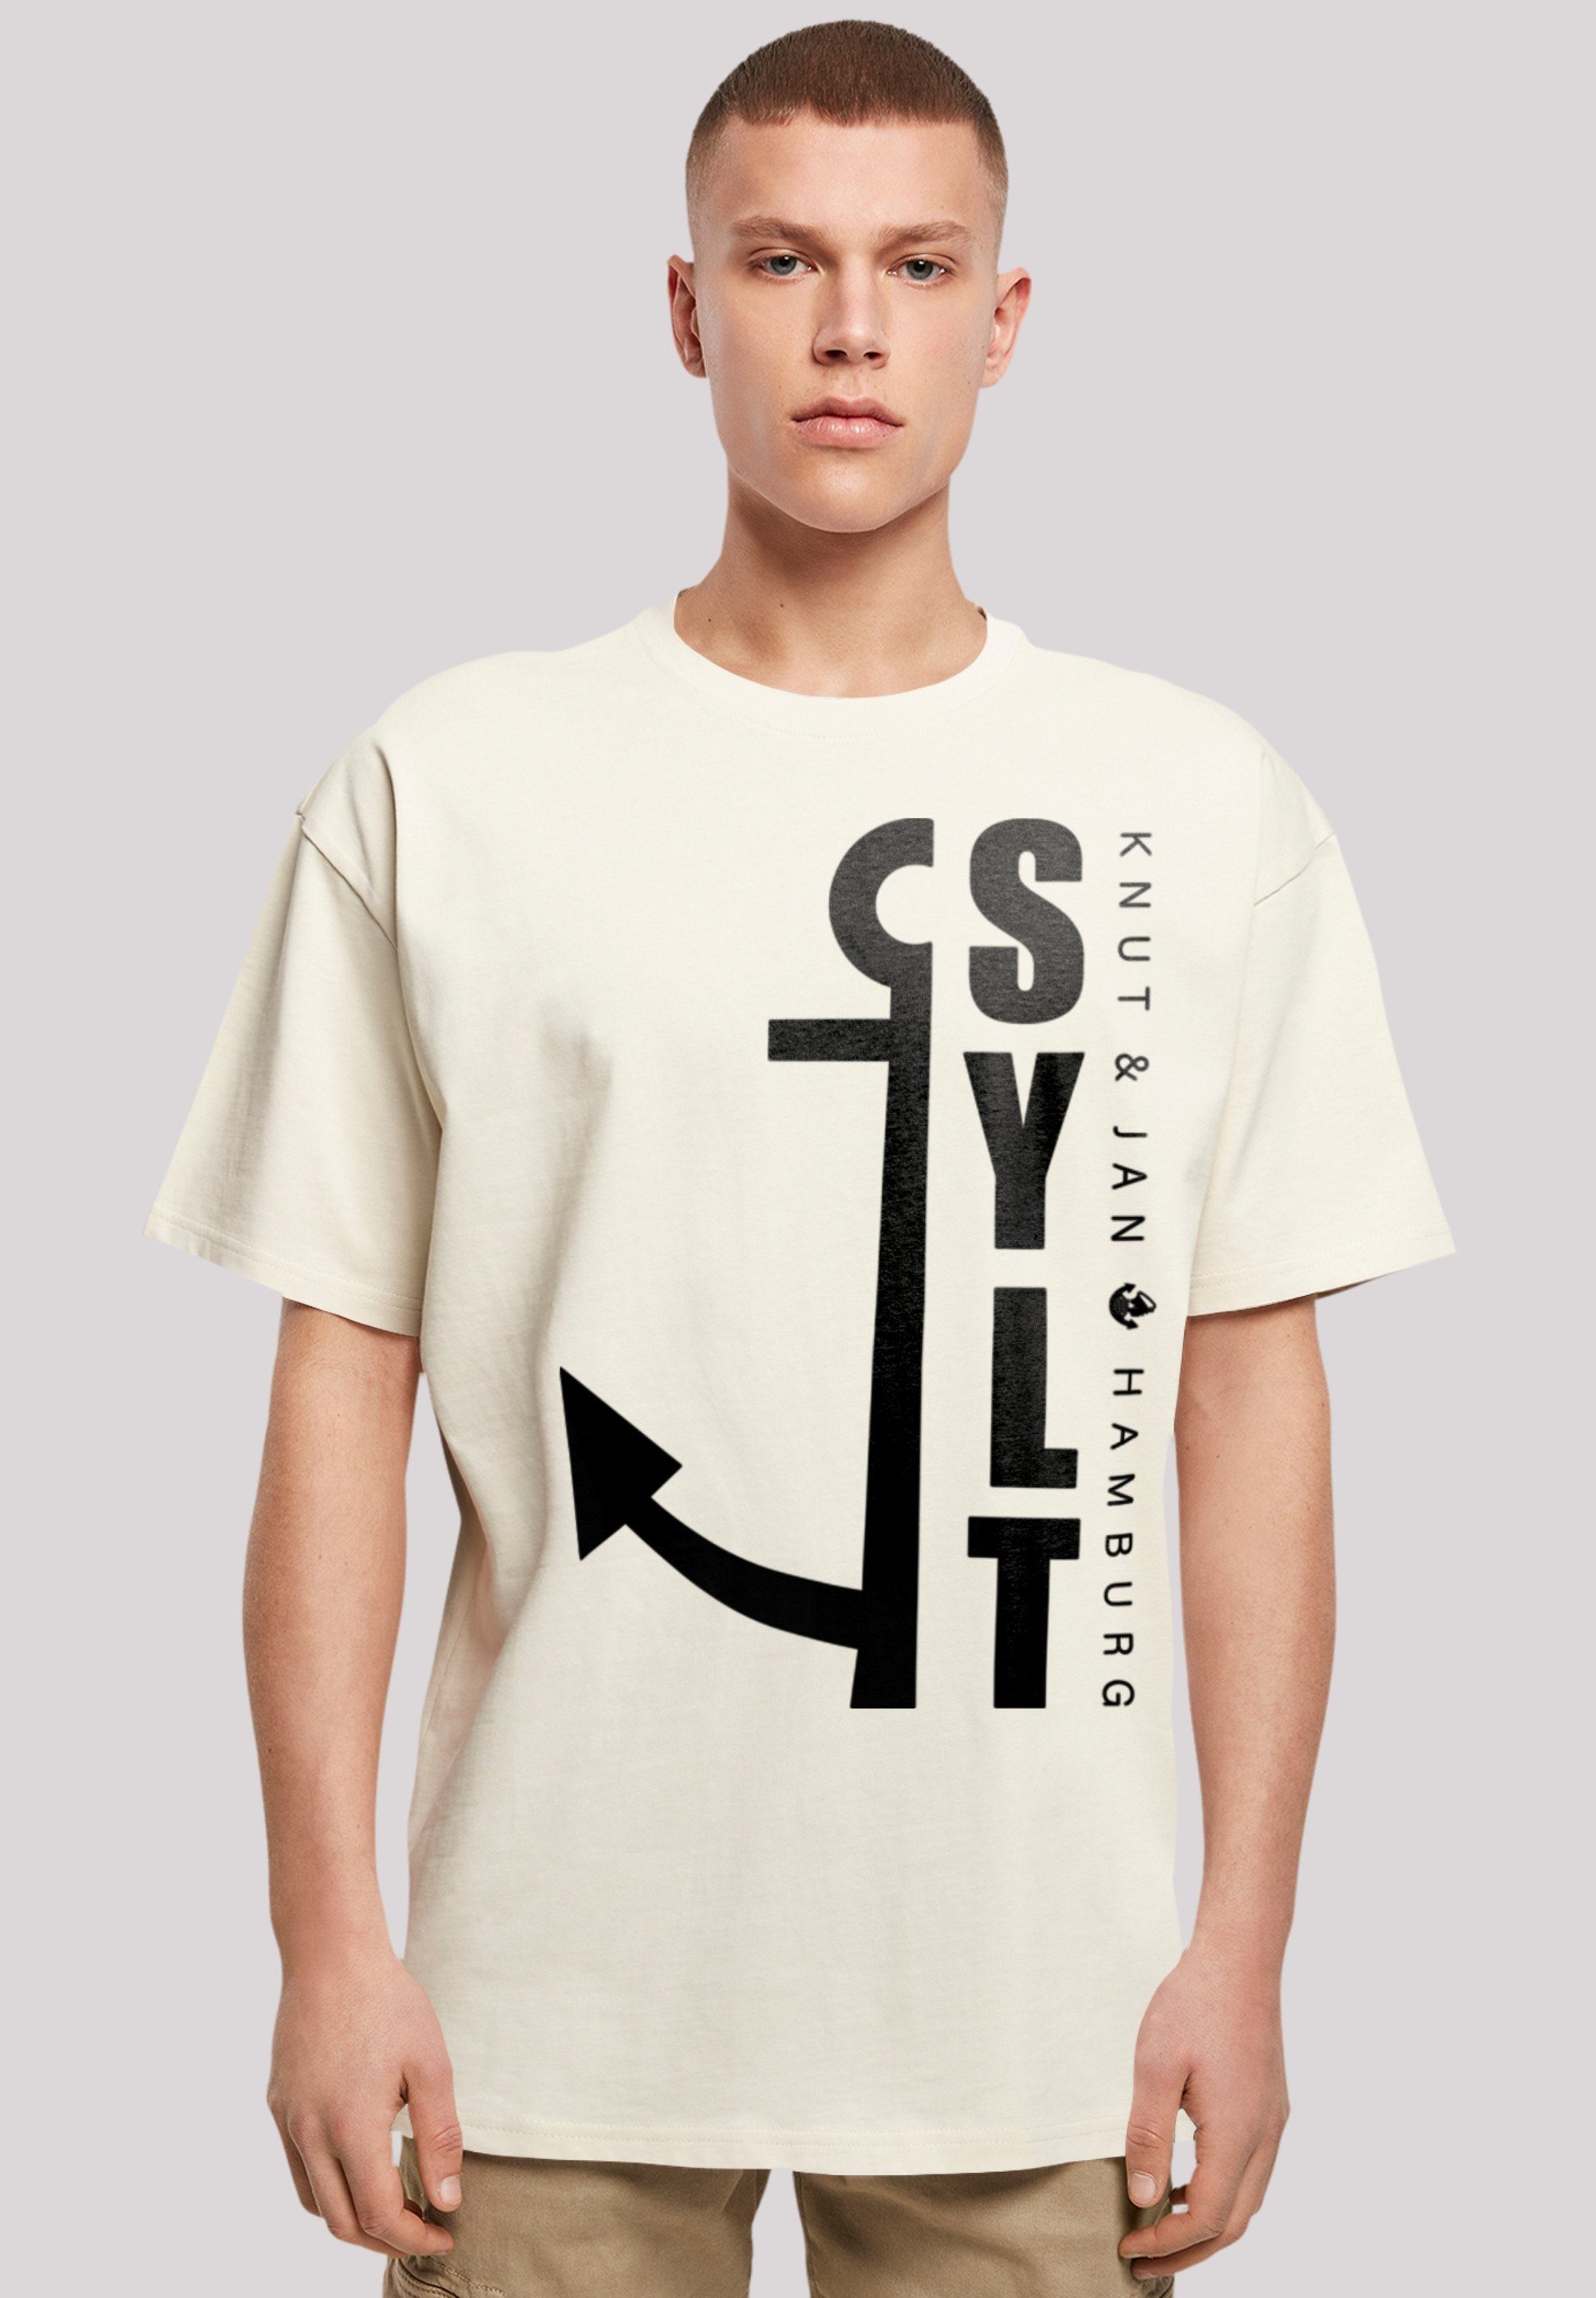 F4NT4STIC T-Shirt Sylt Anker Knut & Jan Hamburg Print sand